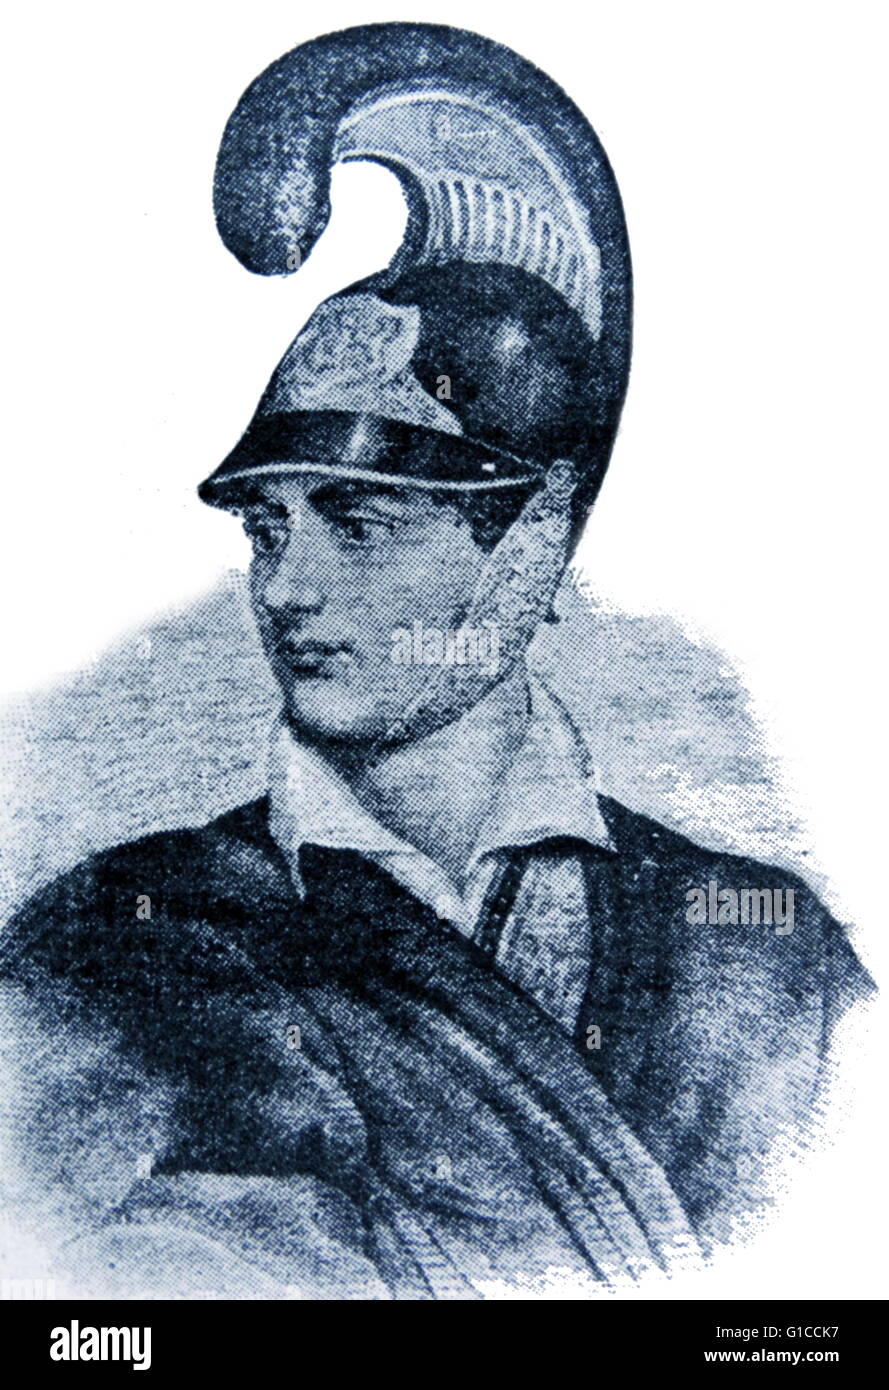 Porträt von George Gordon Byron (1788-1824) Abbildung ein englischer Dichter und einer der führenden in der romantischen Bewegung. Vom 19. Jahrhundert Stockfoto